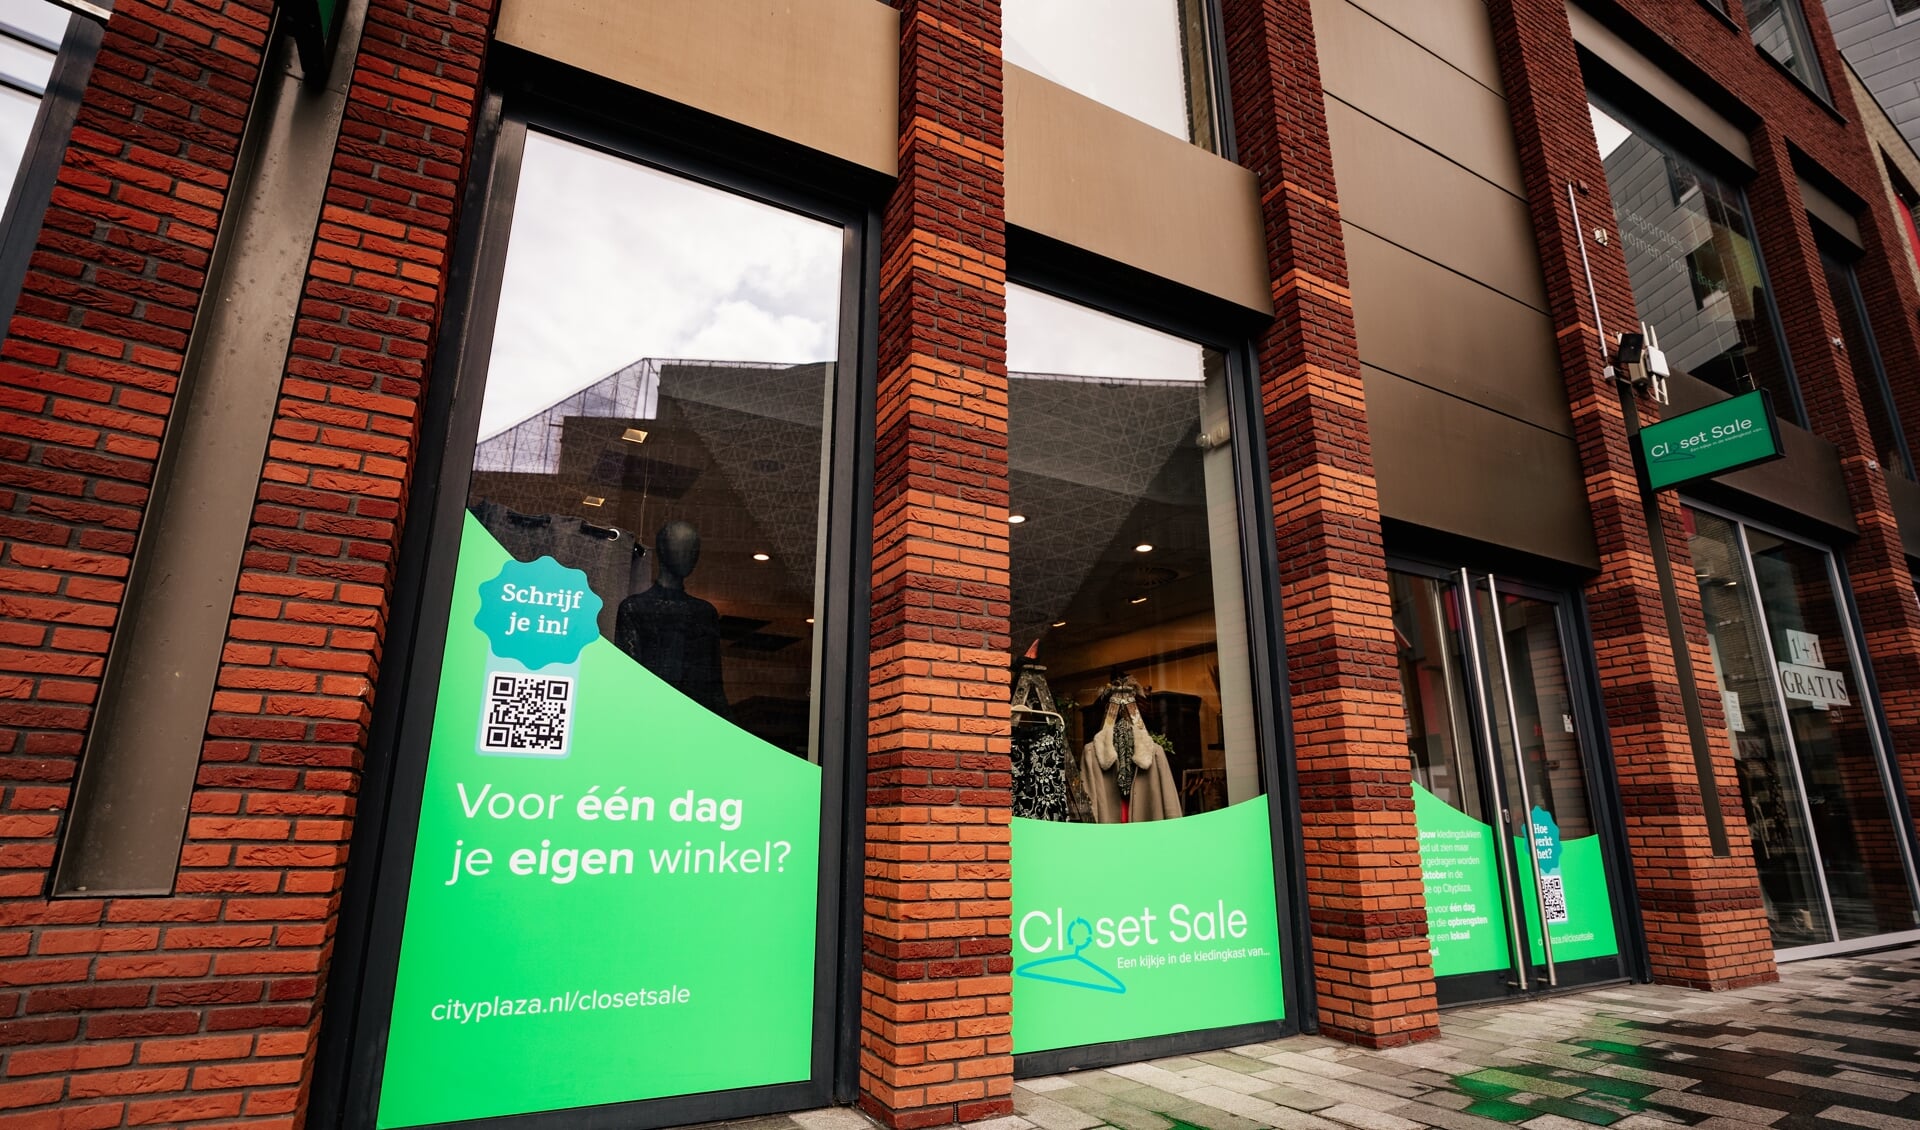 De winkel aan de Raadstede 27 in Nieuwegein waar 'The Closet Sale' plaatsvindt.